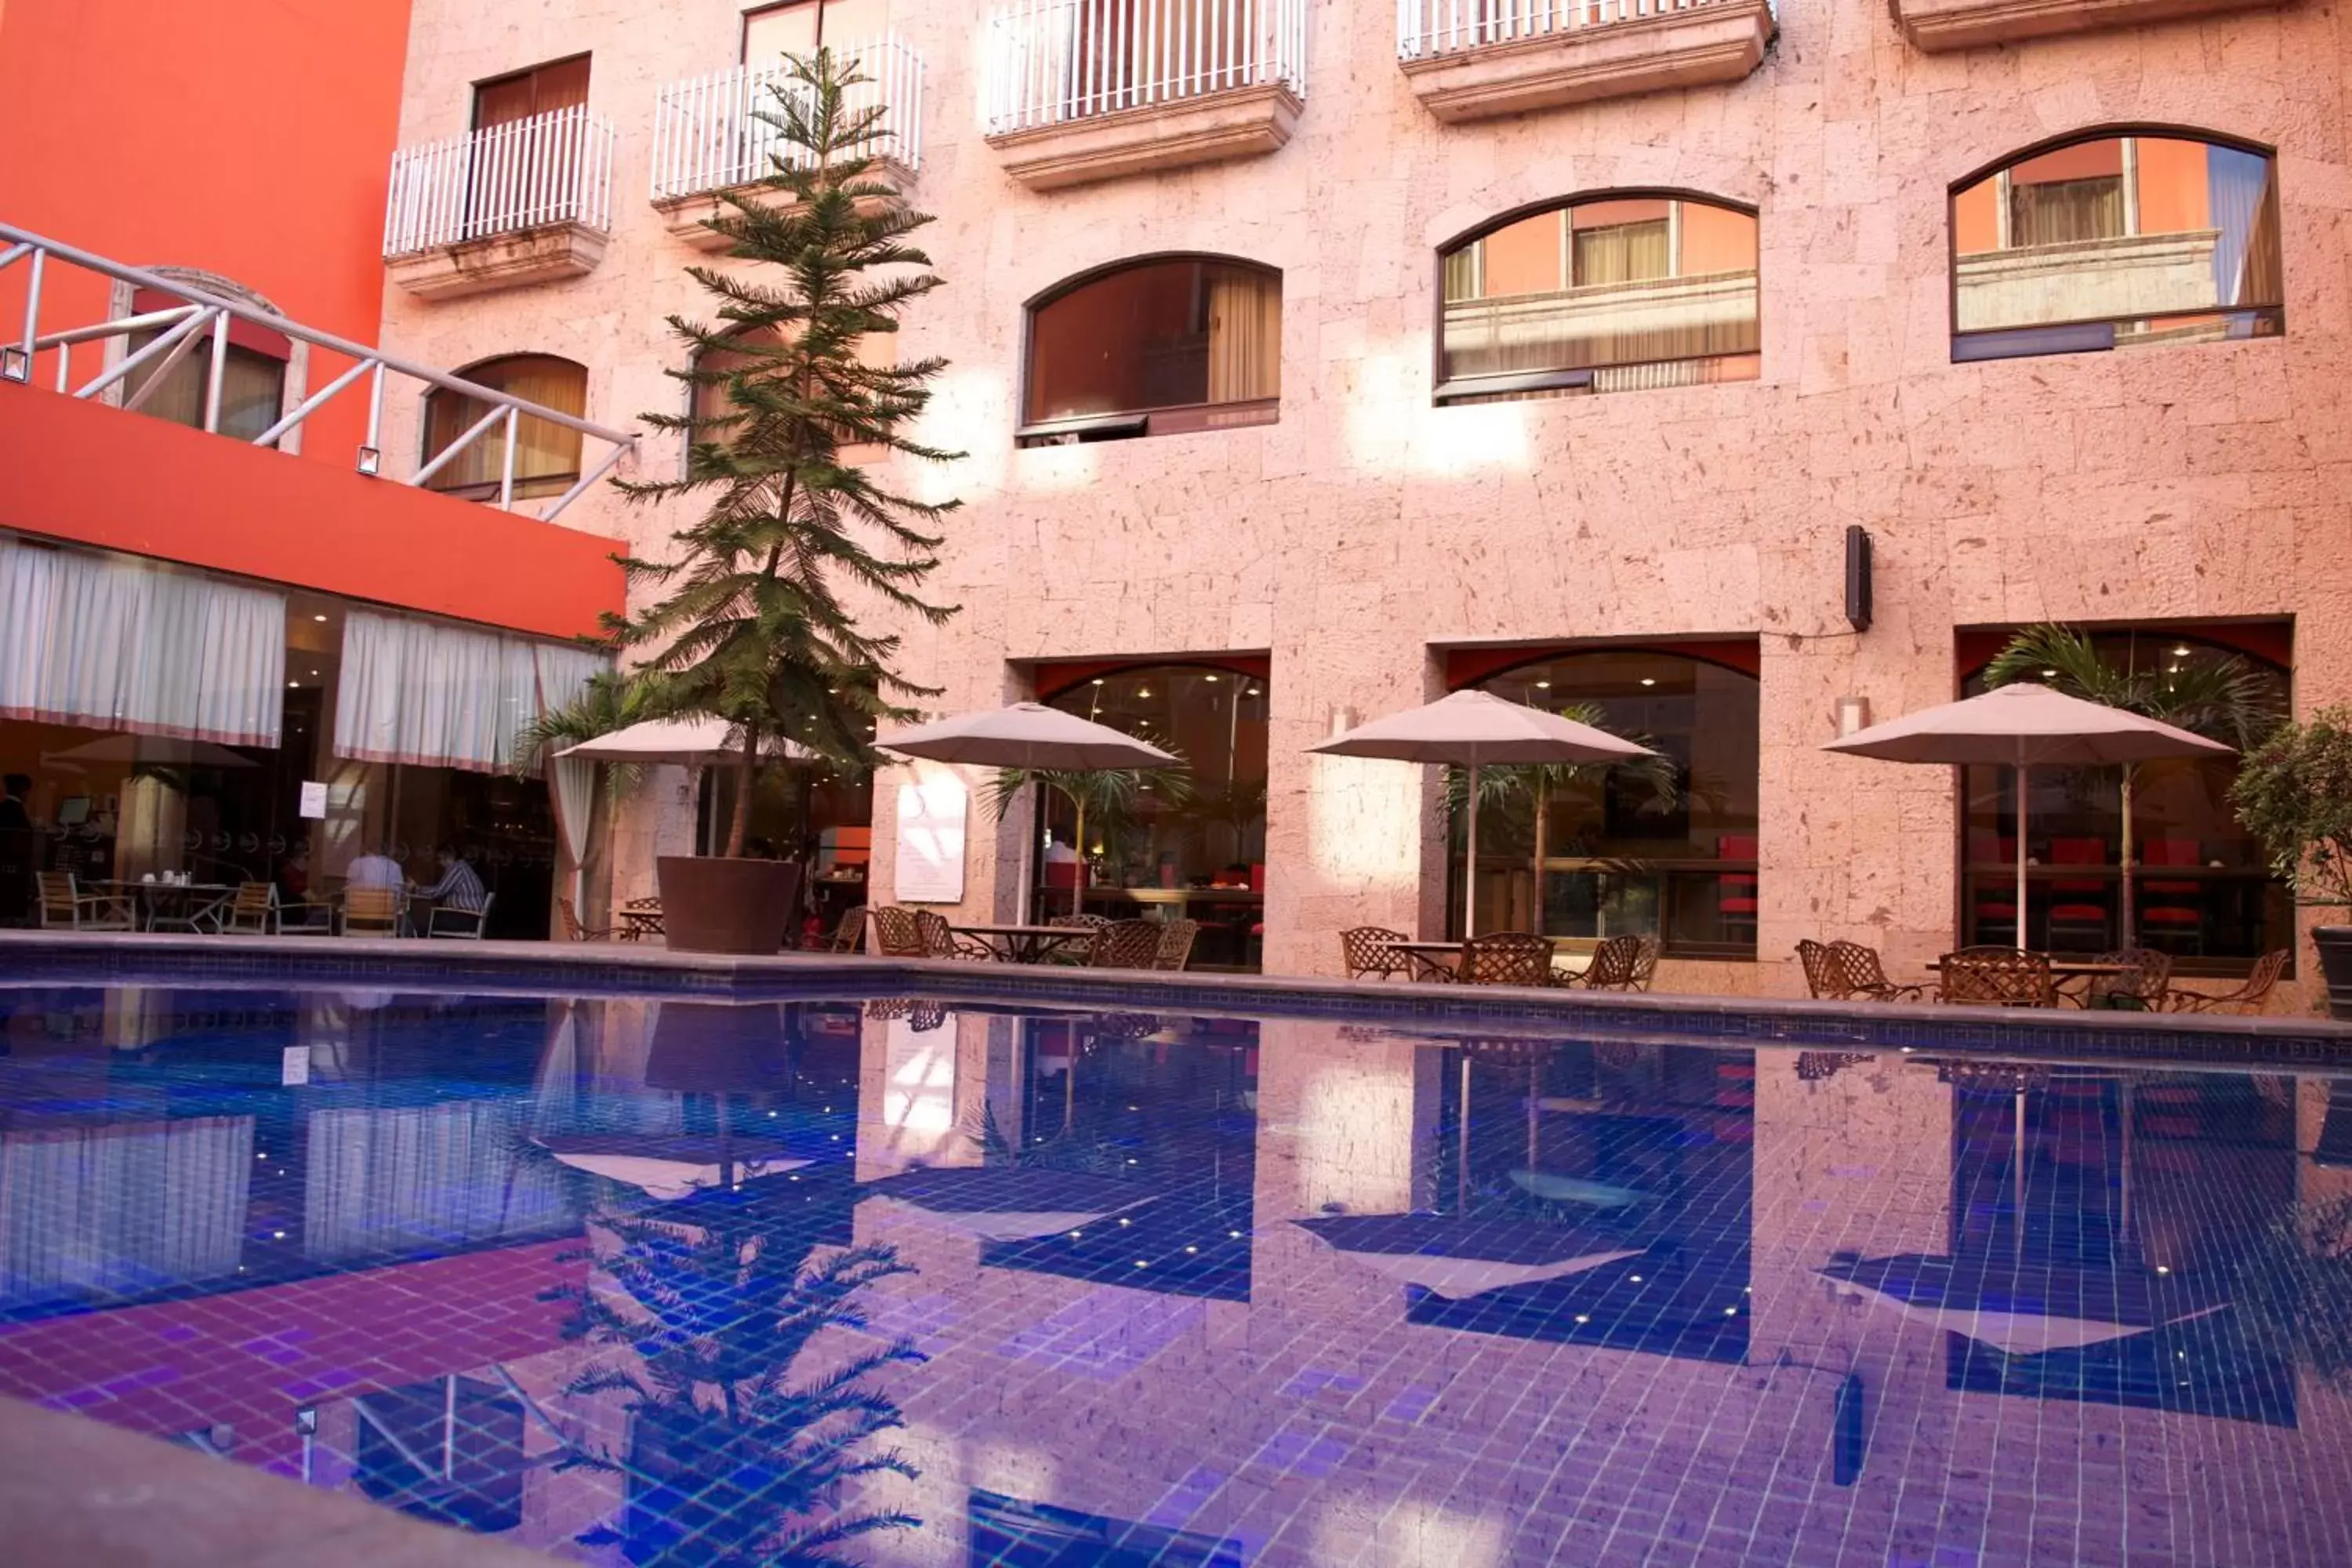 Balcony/Terrace, Swimming Pool in Hotel Celta